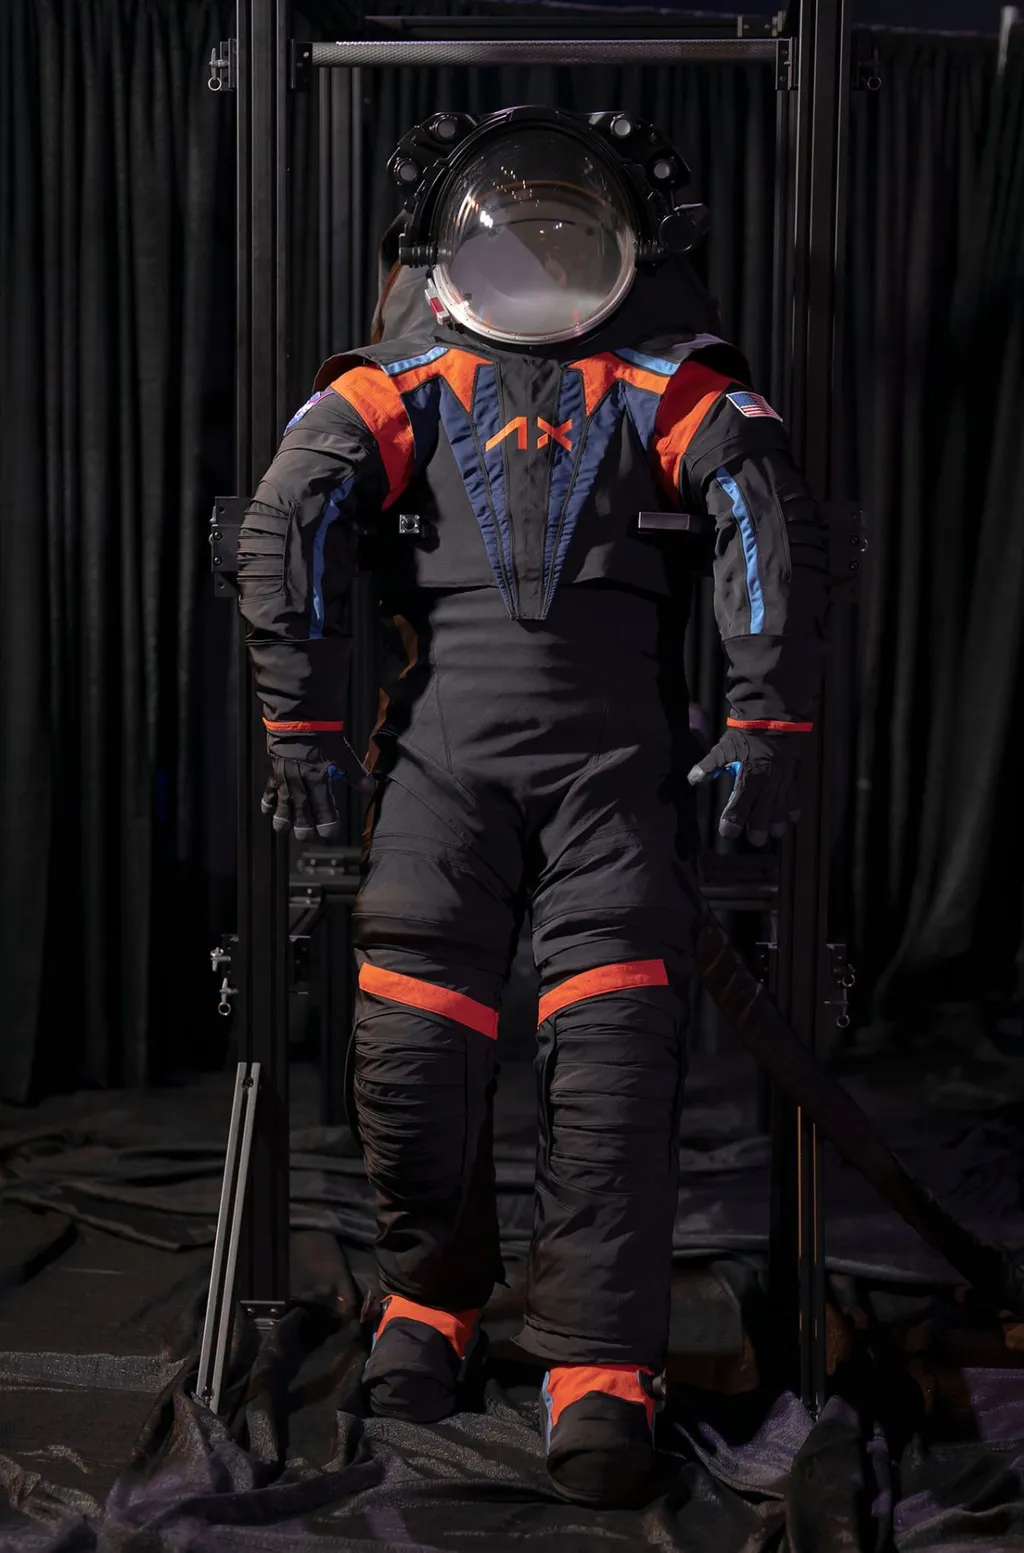 Protótipo dos trajes espaciais da Axiom Space; a cobertura escura esconde parte da estrutura (Imagem: Reprodução/Axiom Space)